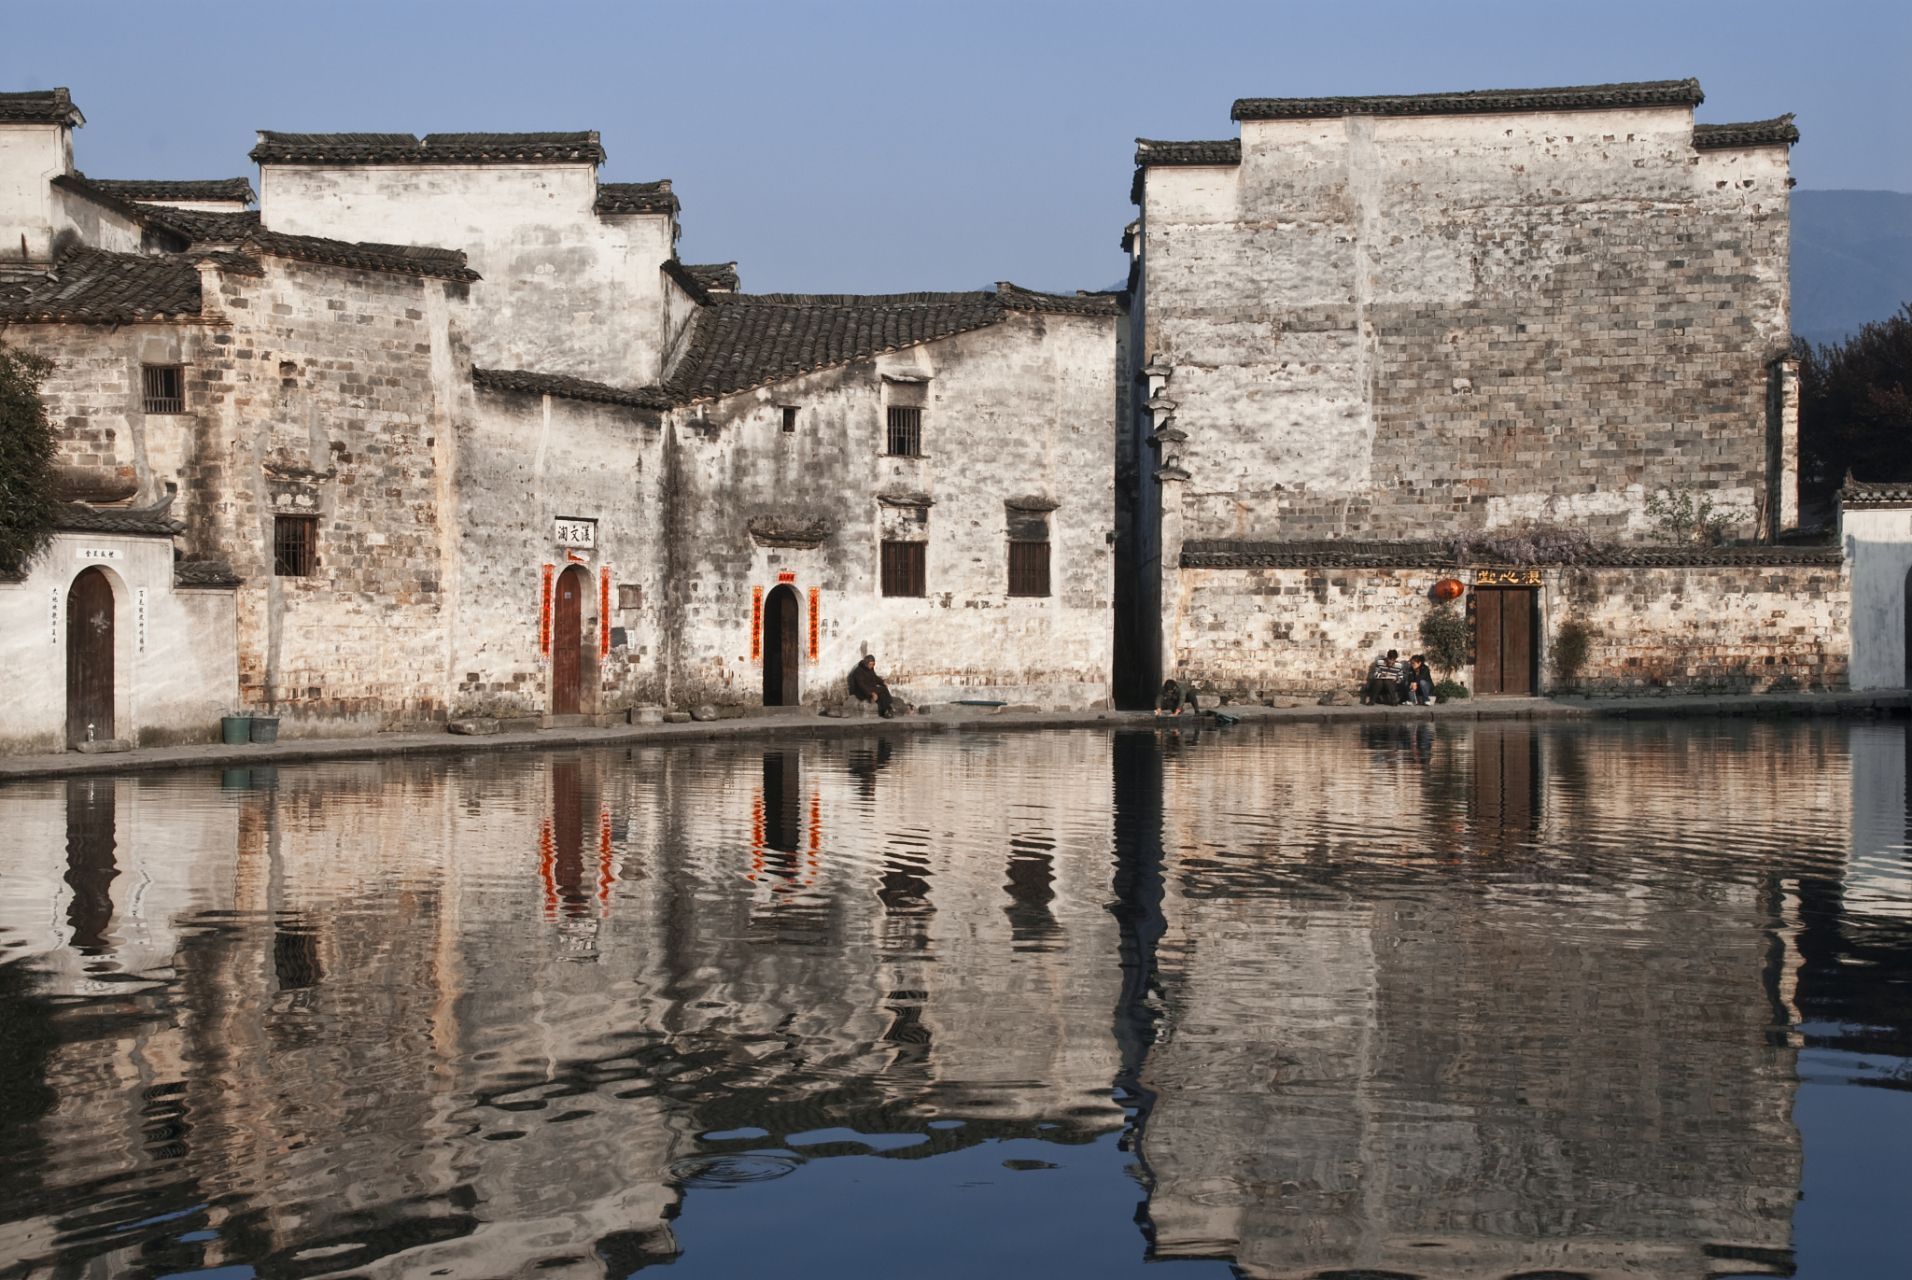 西递古镇是中国安徽省黄山市的一个历史文化名镇,始建于宋朝,始兴于